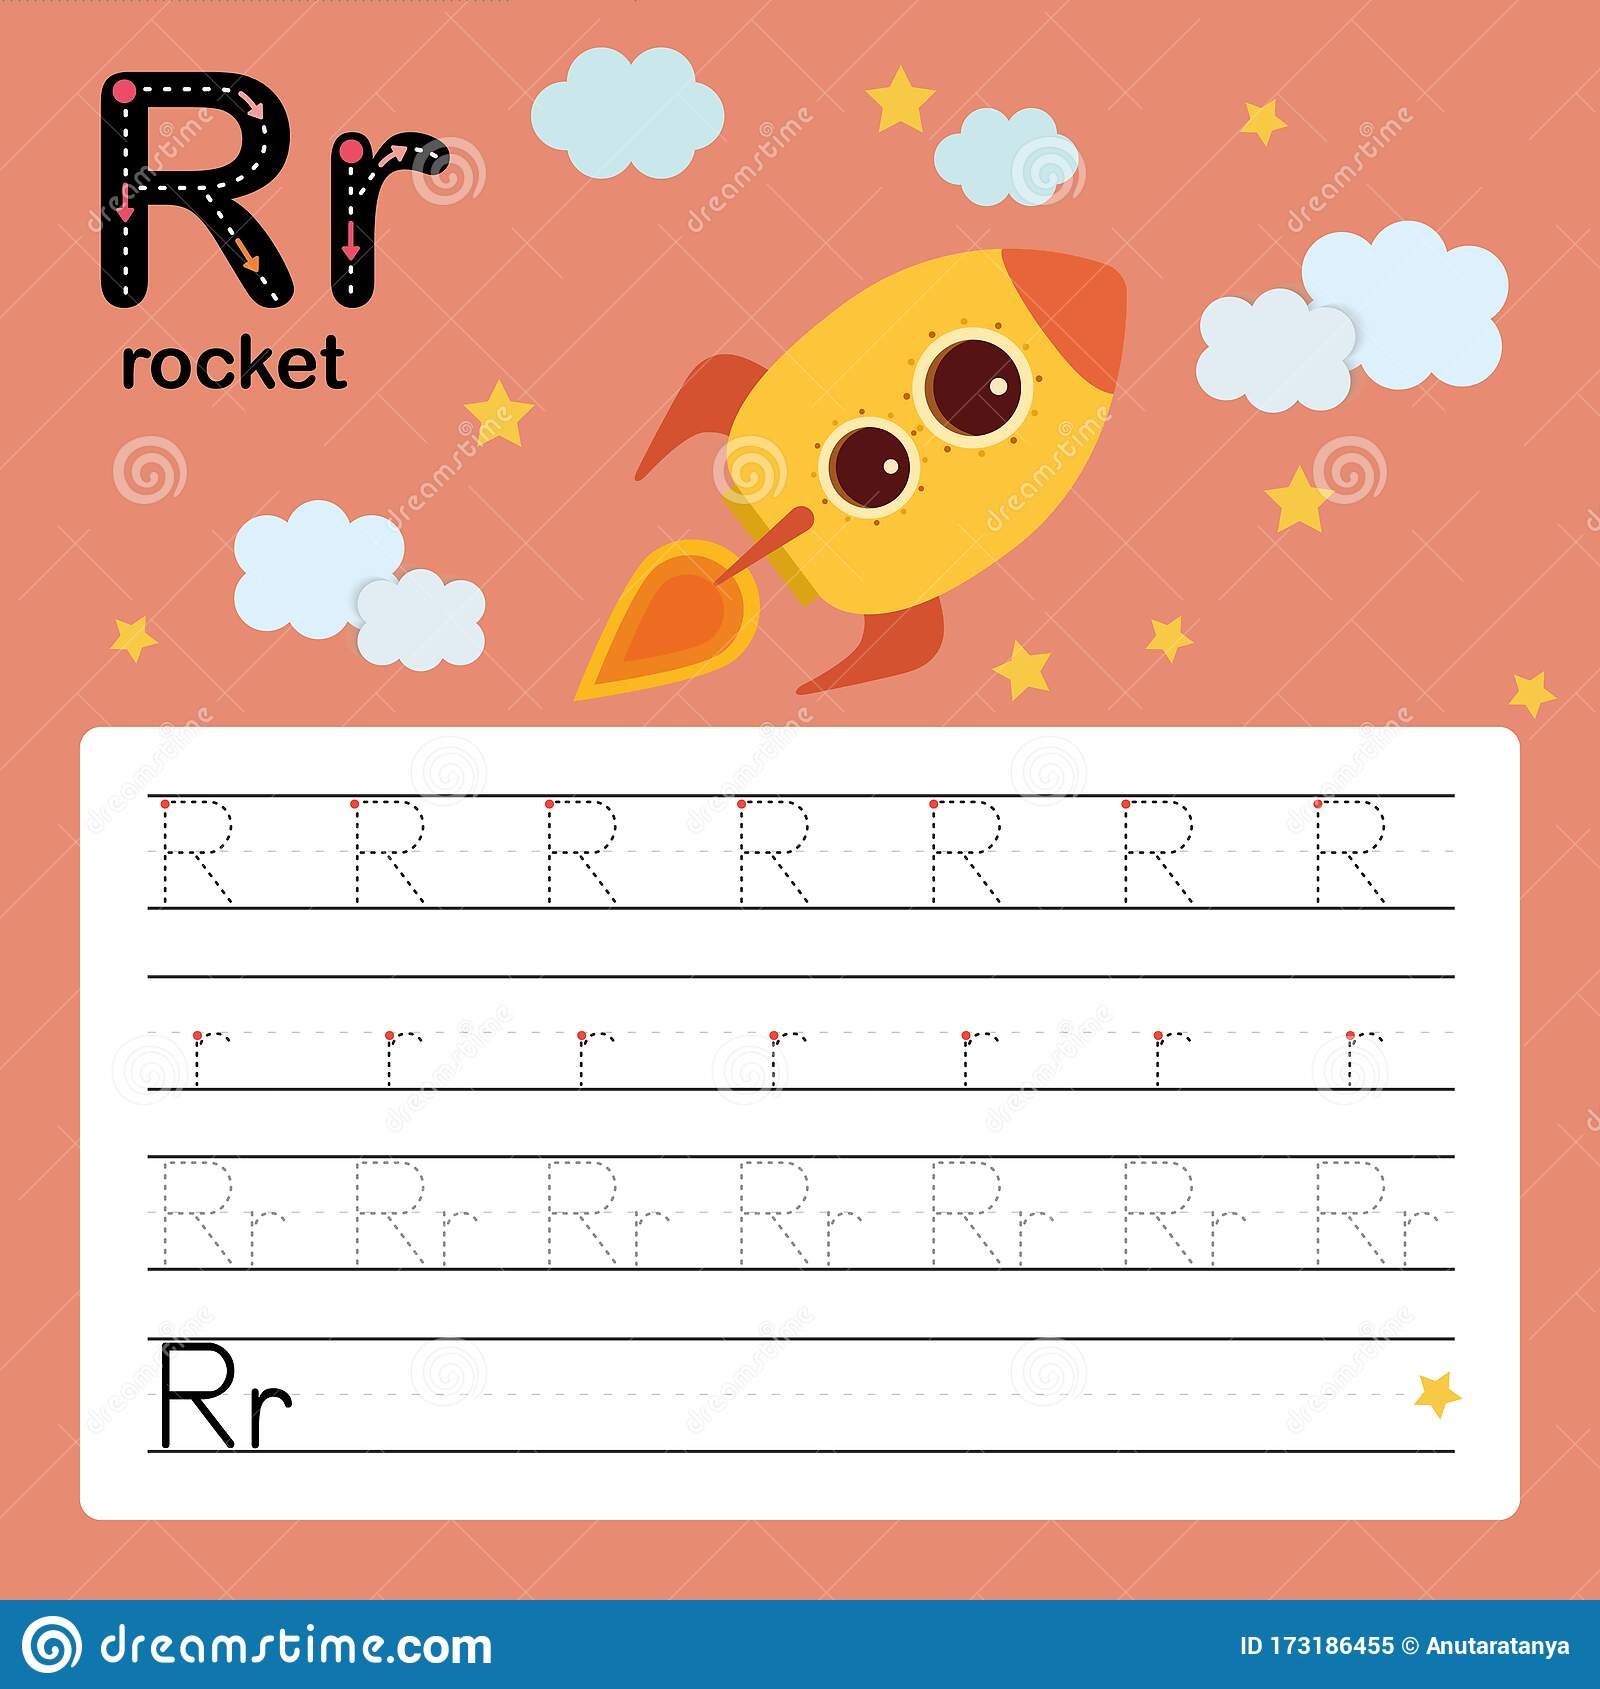 Alphabet Tracing Worksheet For Preschool And Kindergarten To regarding Letter R Tracing Preschool